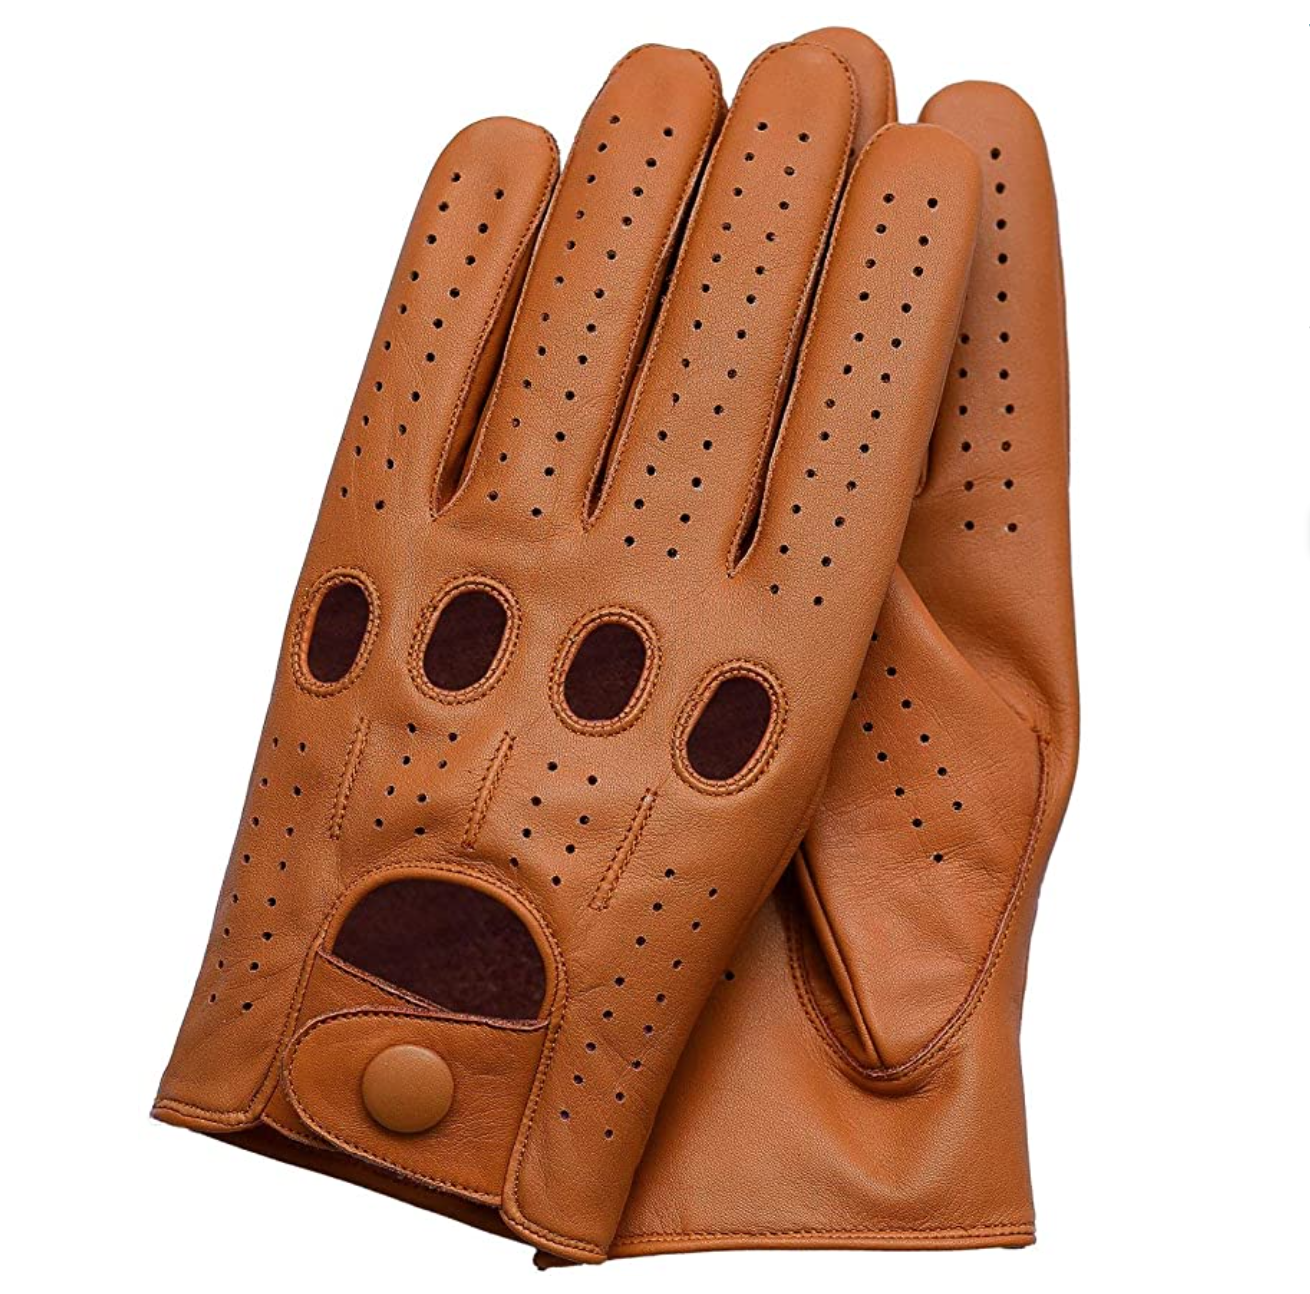 Купить кож перчатки мужские. Перчатки кожаные Genuine Leather. Genuine Leather HYNB перчатки кожаные мужские. Водительские перчатки. Перчатки для вождения.